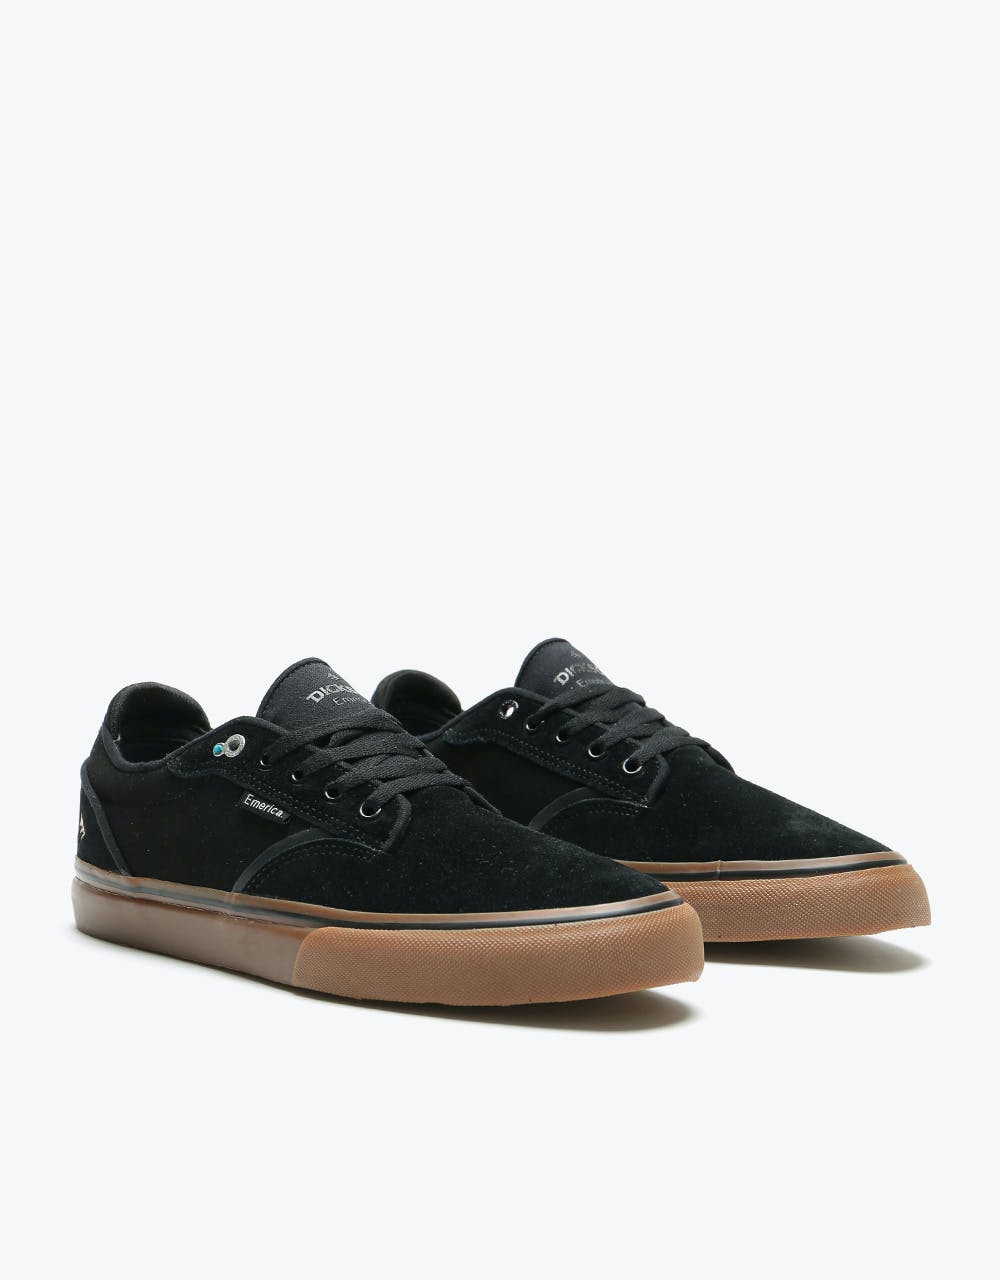 Emerica Dickson Skate Shoes - Black/Gum